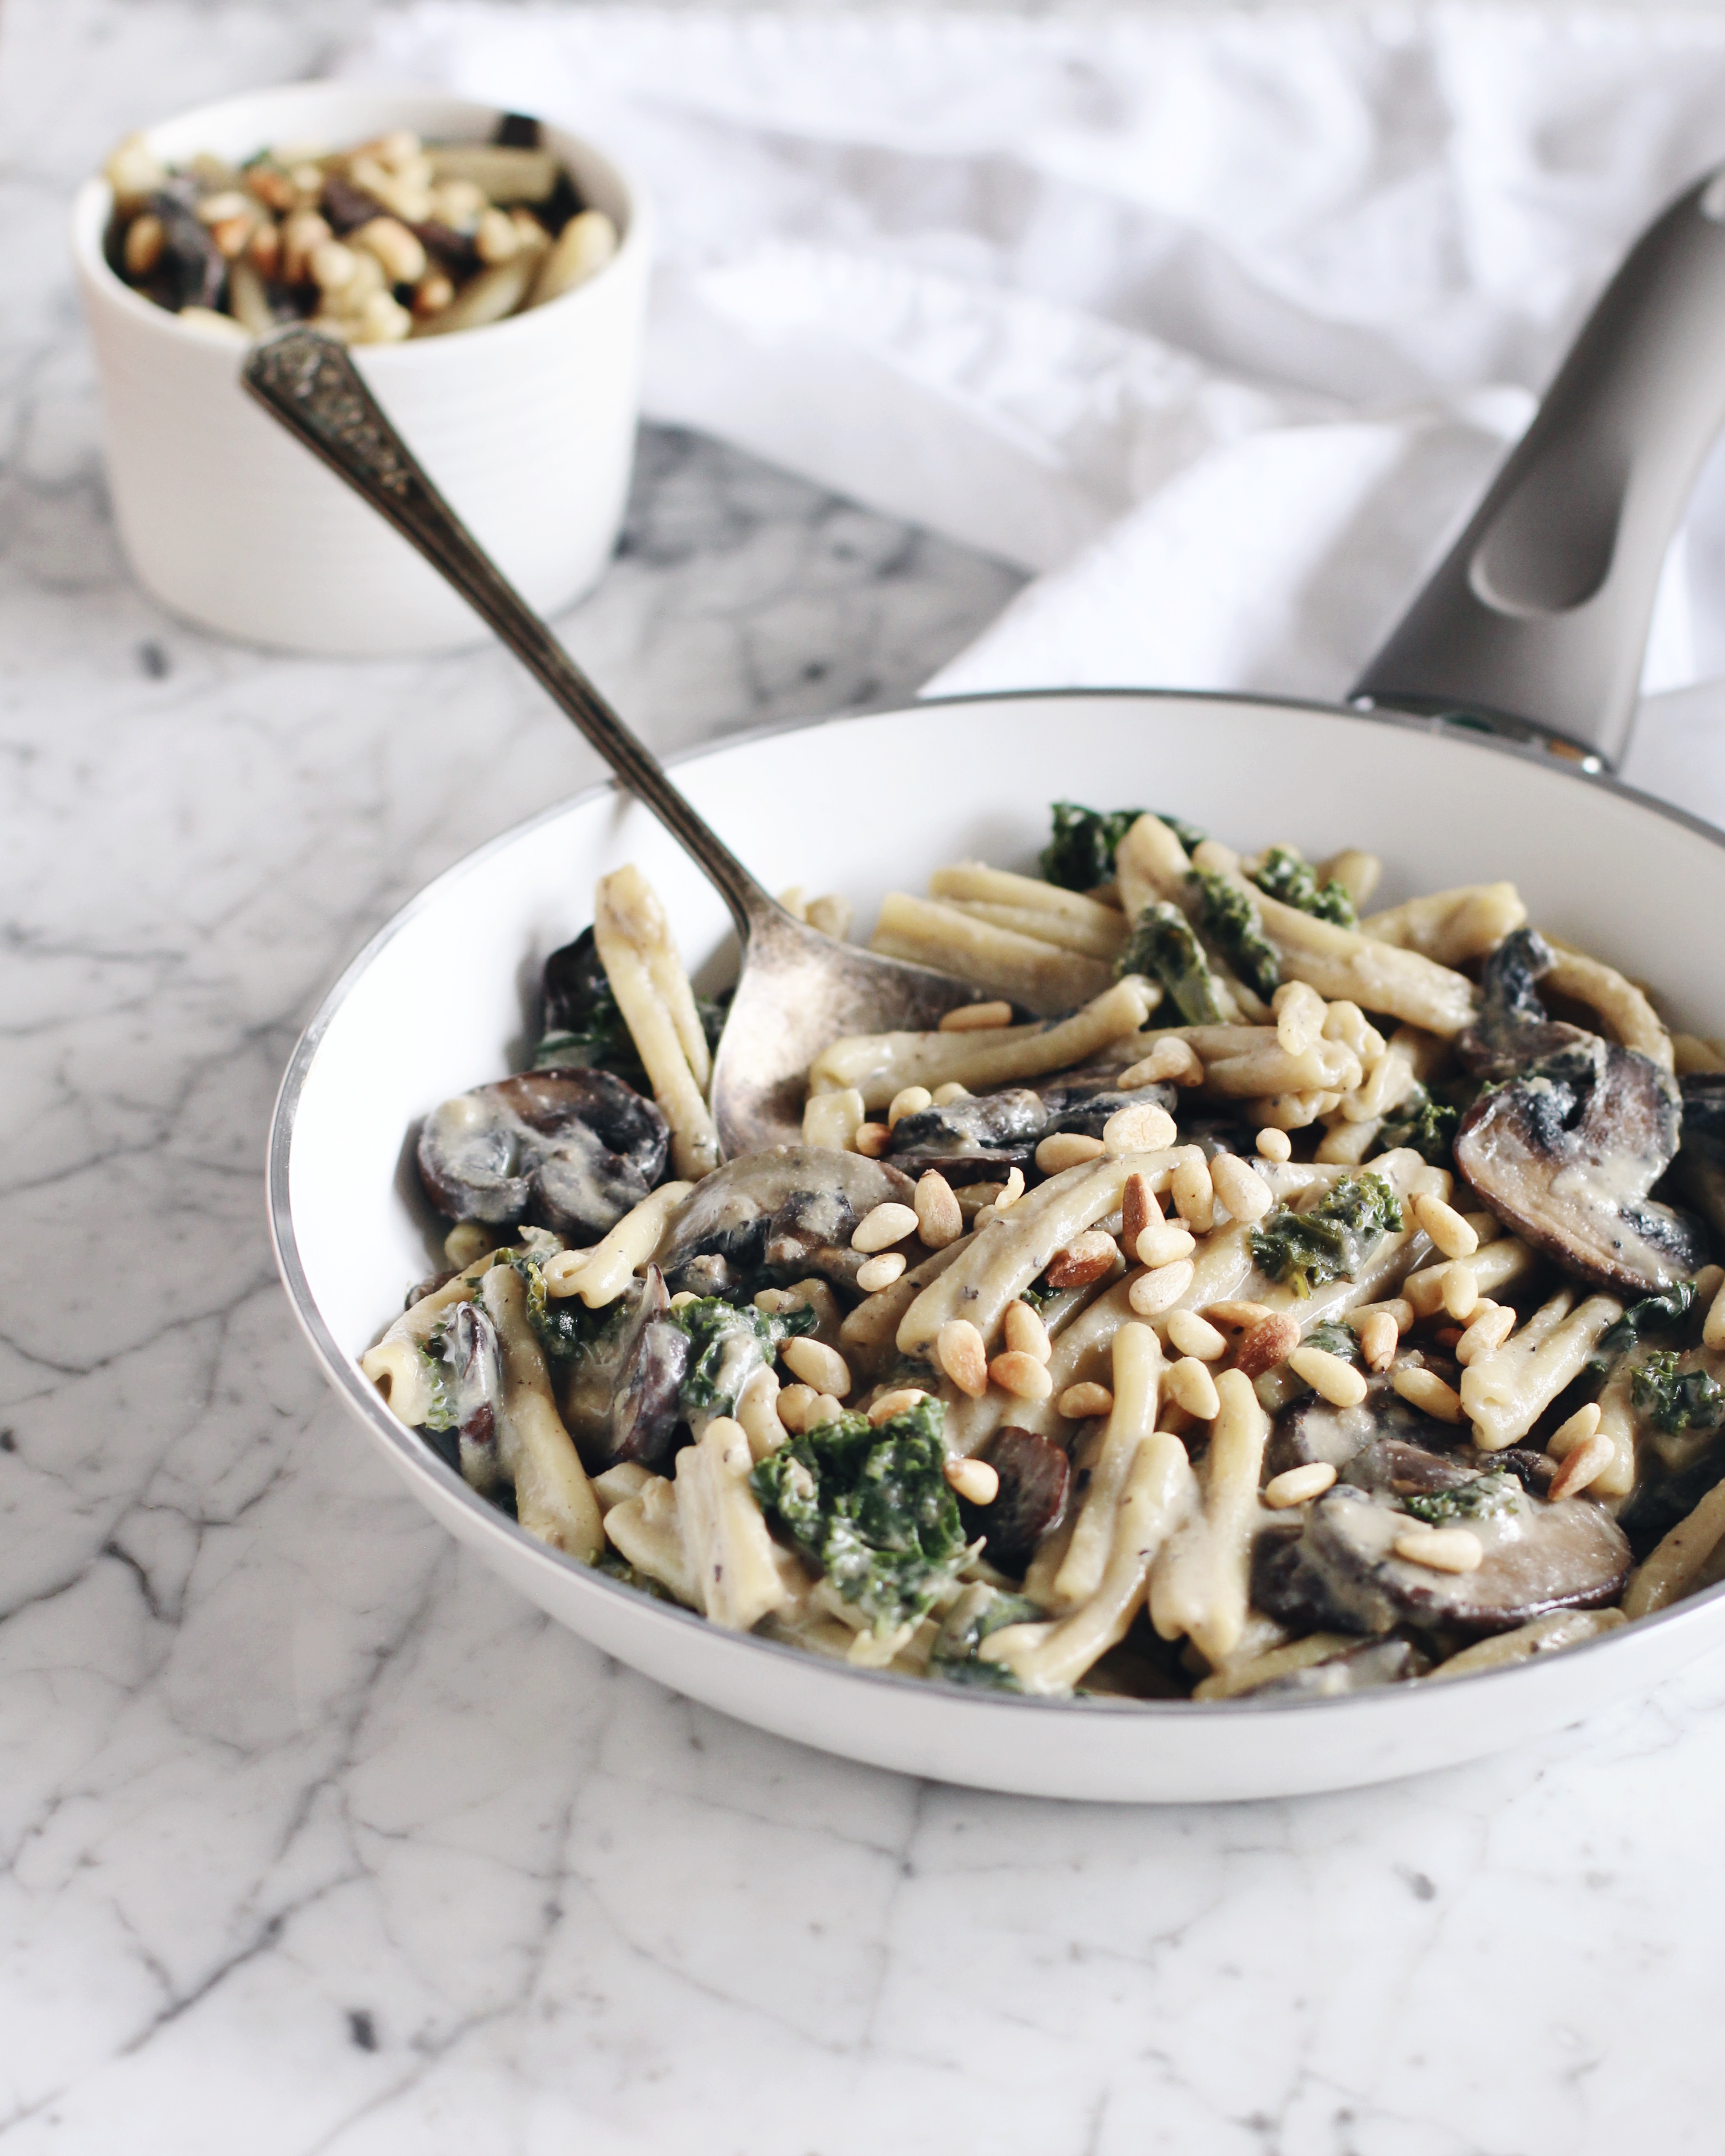 Creamy Garlicky Kale & Mushroom Pasta (Vegan) recipe from Fraiche Nutrition